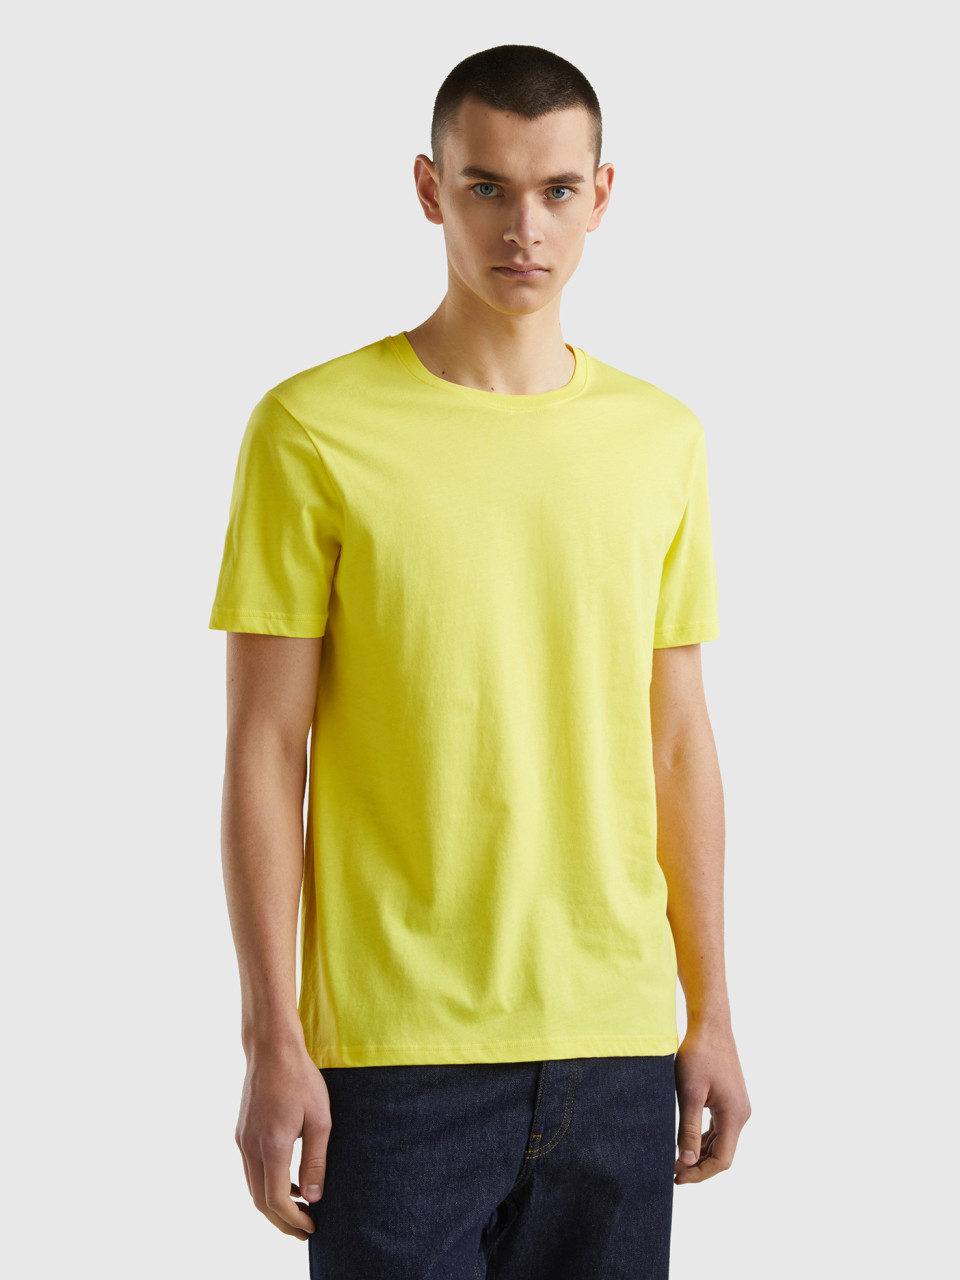 Benetton, T-shirt Gialla, Giallo, Uomo